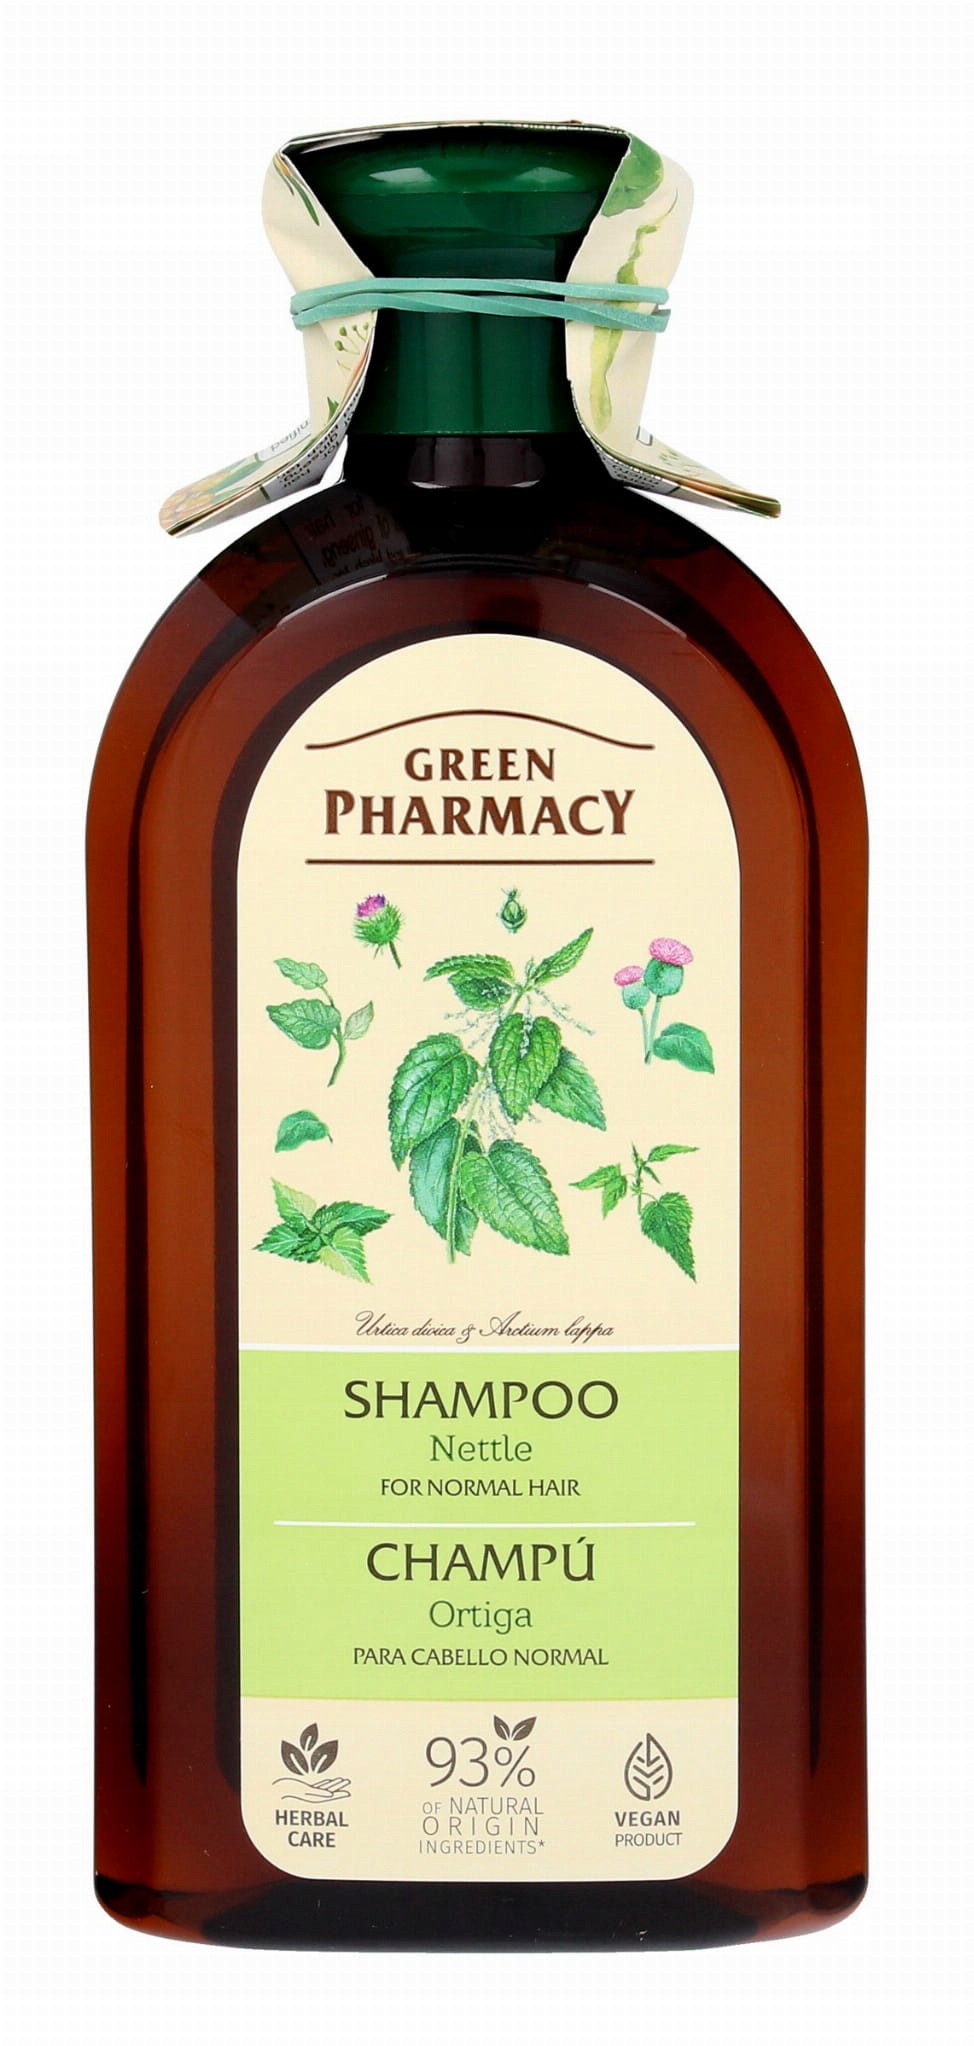 szampon do włosów green pharmacy